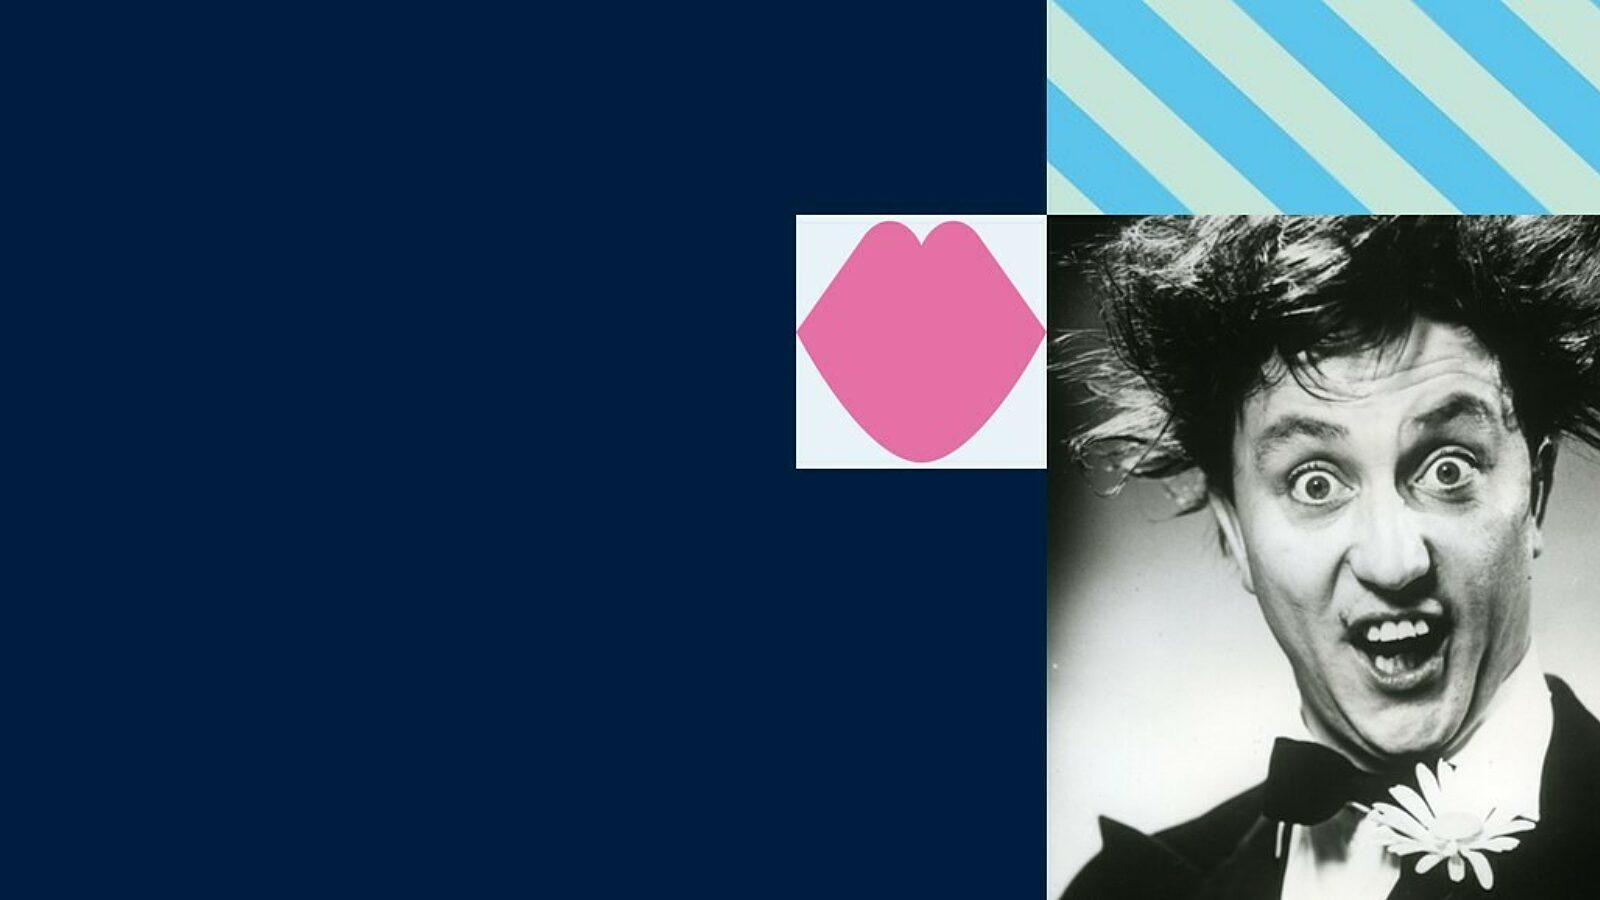 Pink Lips shape in grey block alongside an Black & White headshot of Ken Dodd.